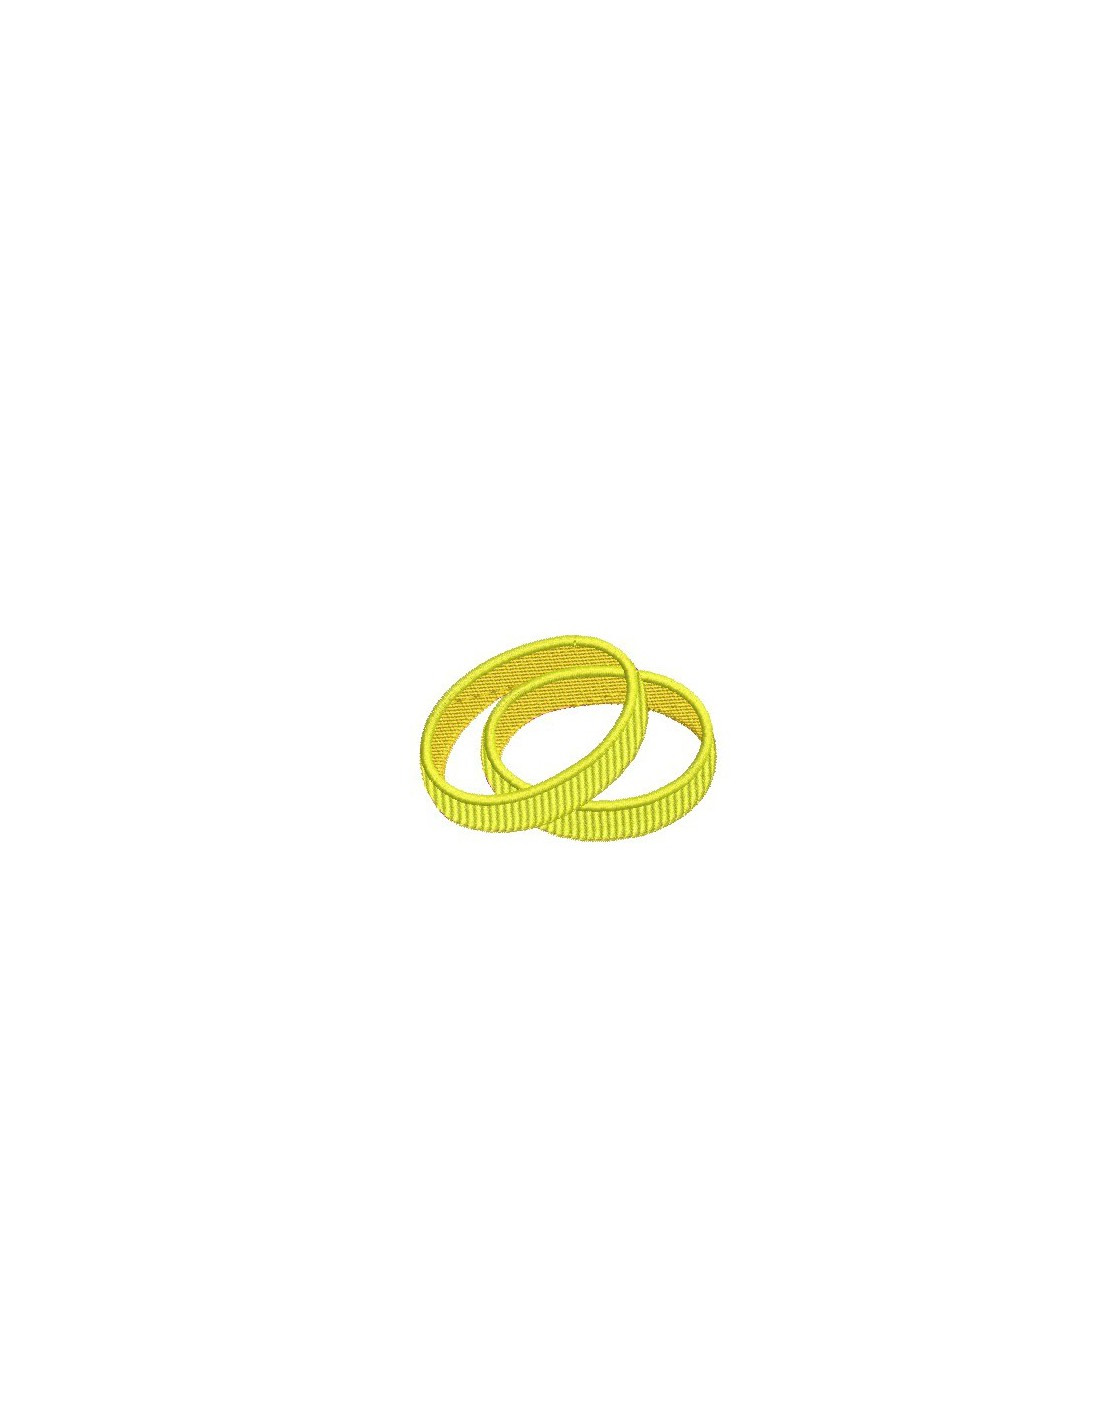 Téléchargement du motif de broderie des anneaux olympiques -  EmbroideryDownload